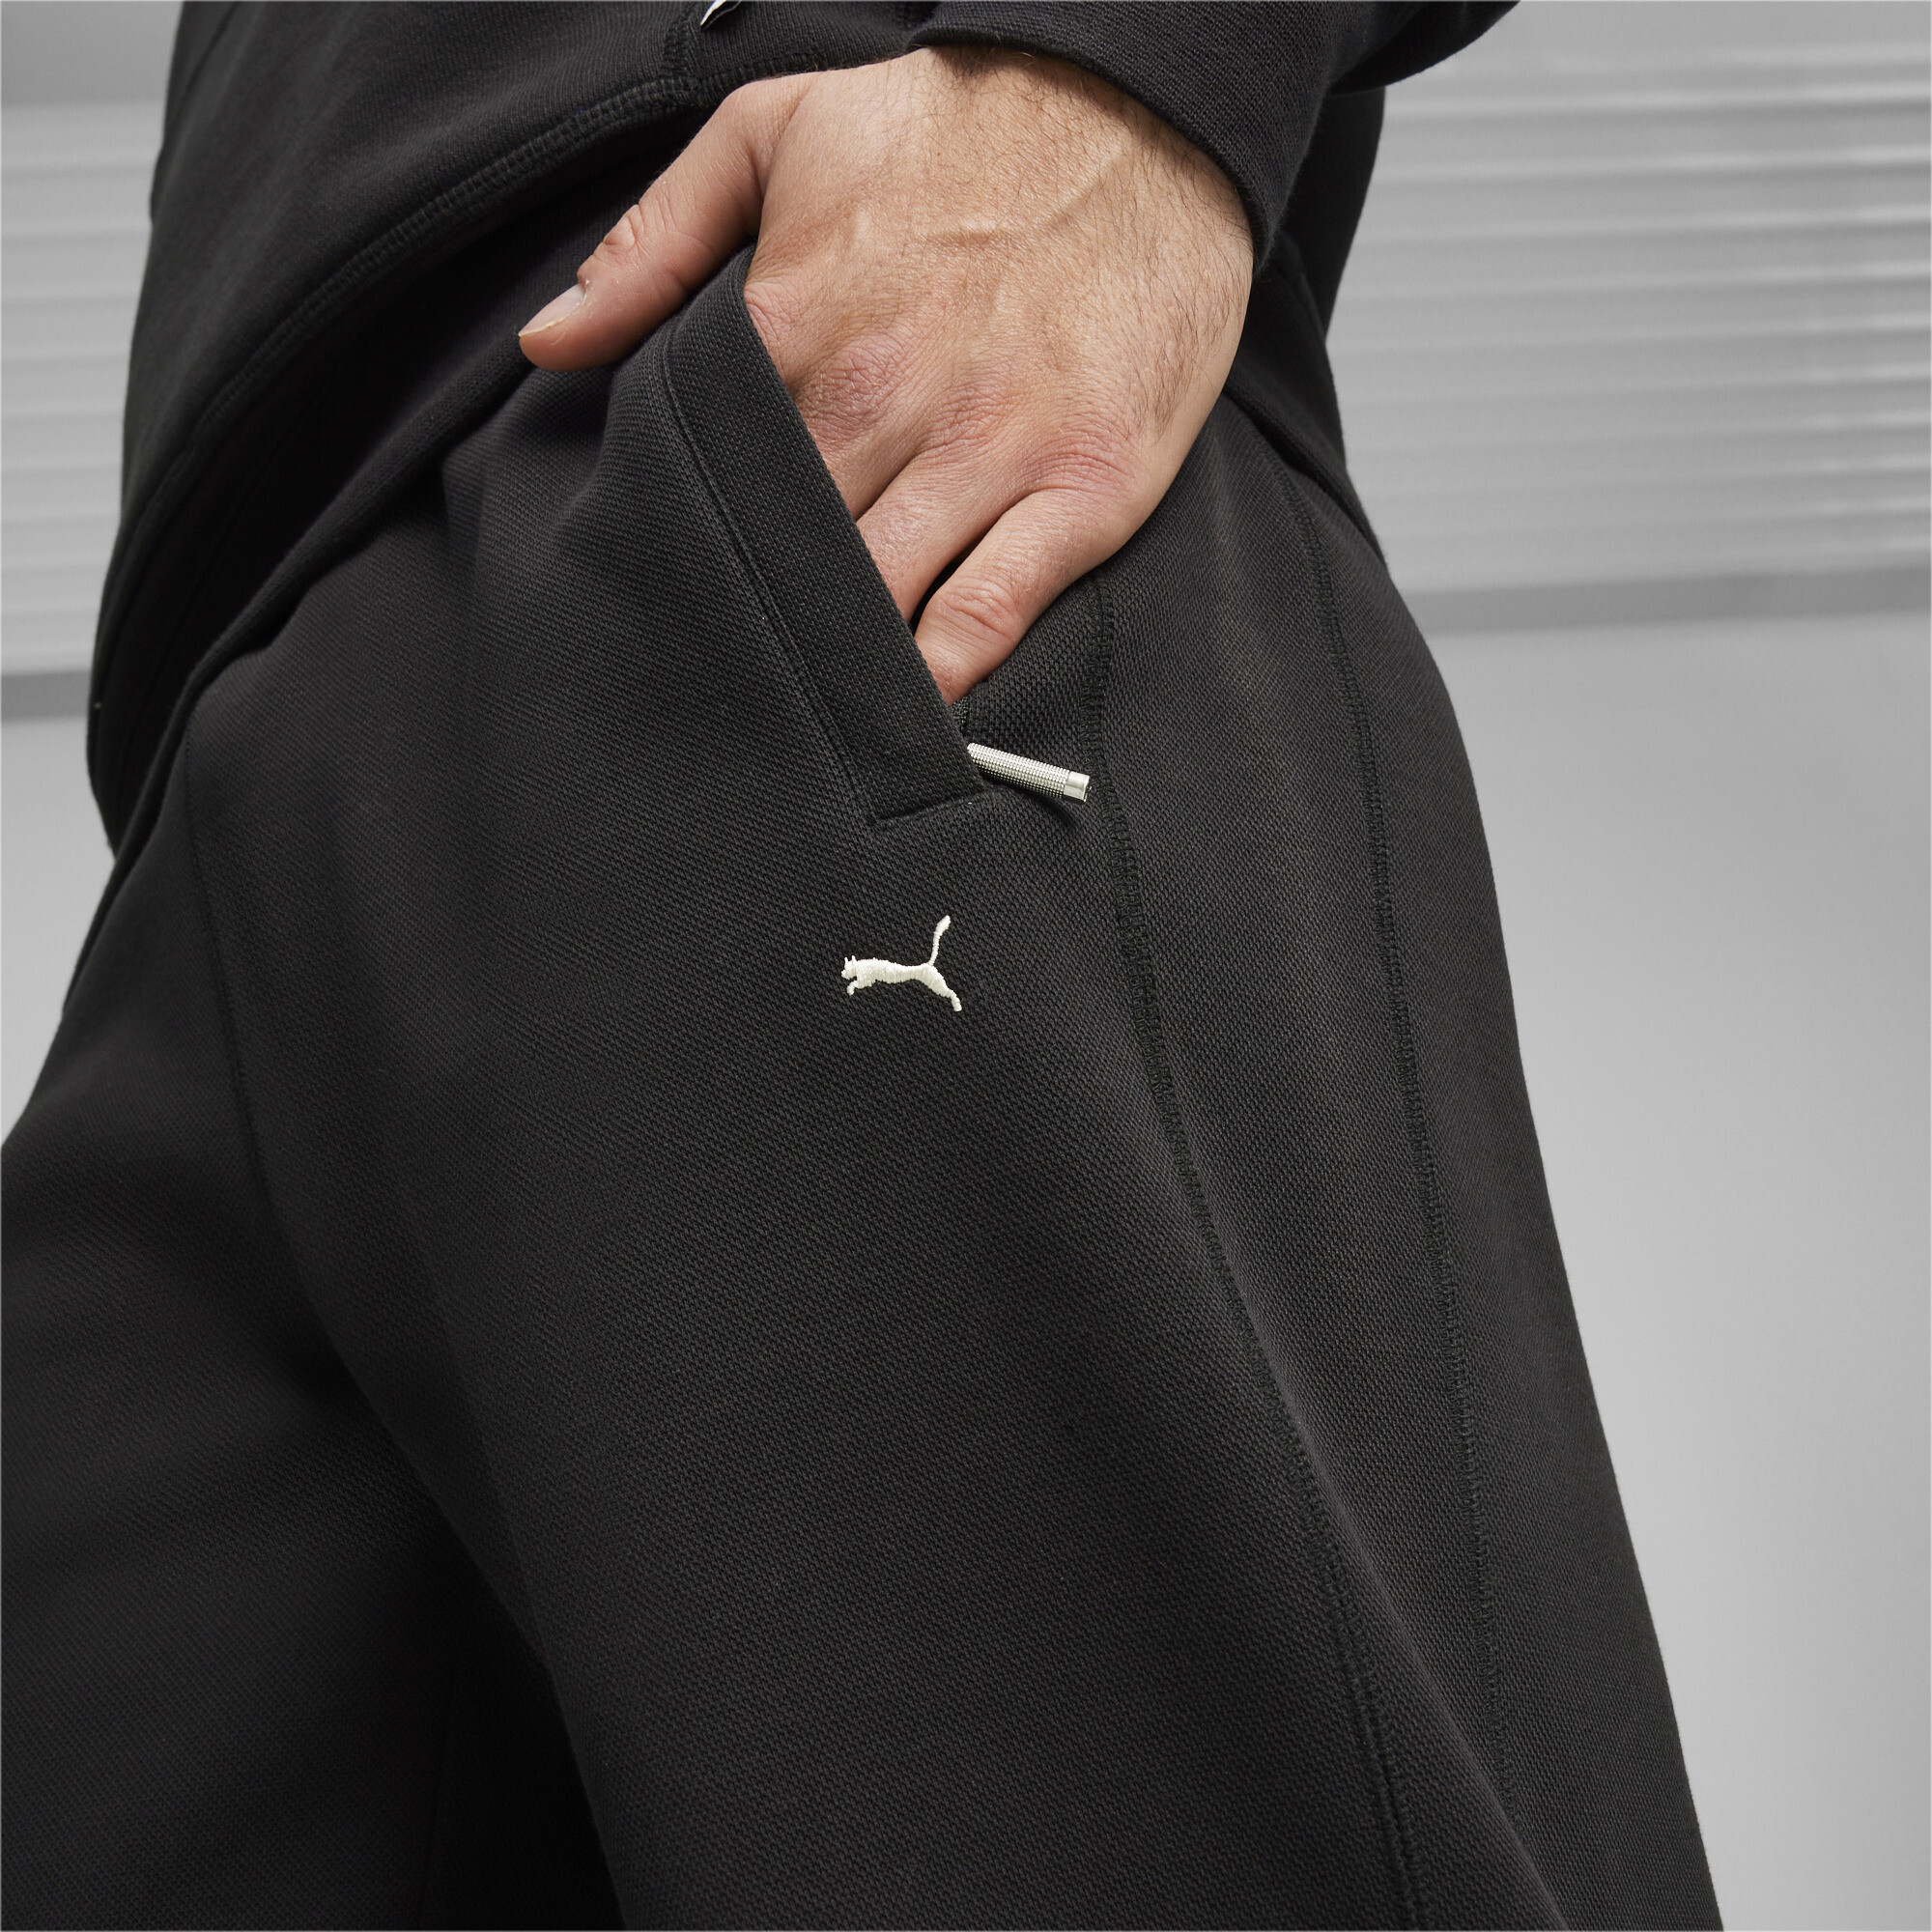 Men's PUMA MMQ T7 Track Pants In Black, Size Medium